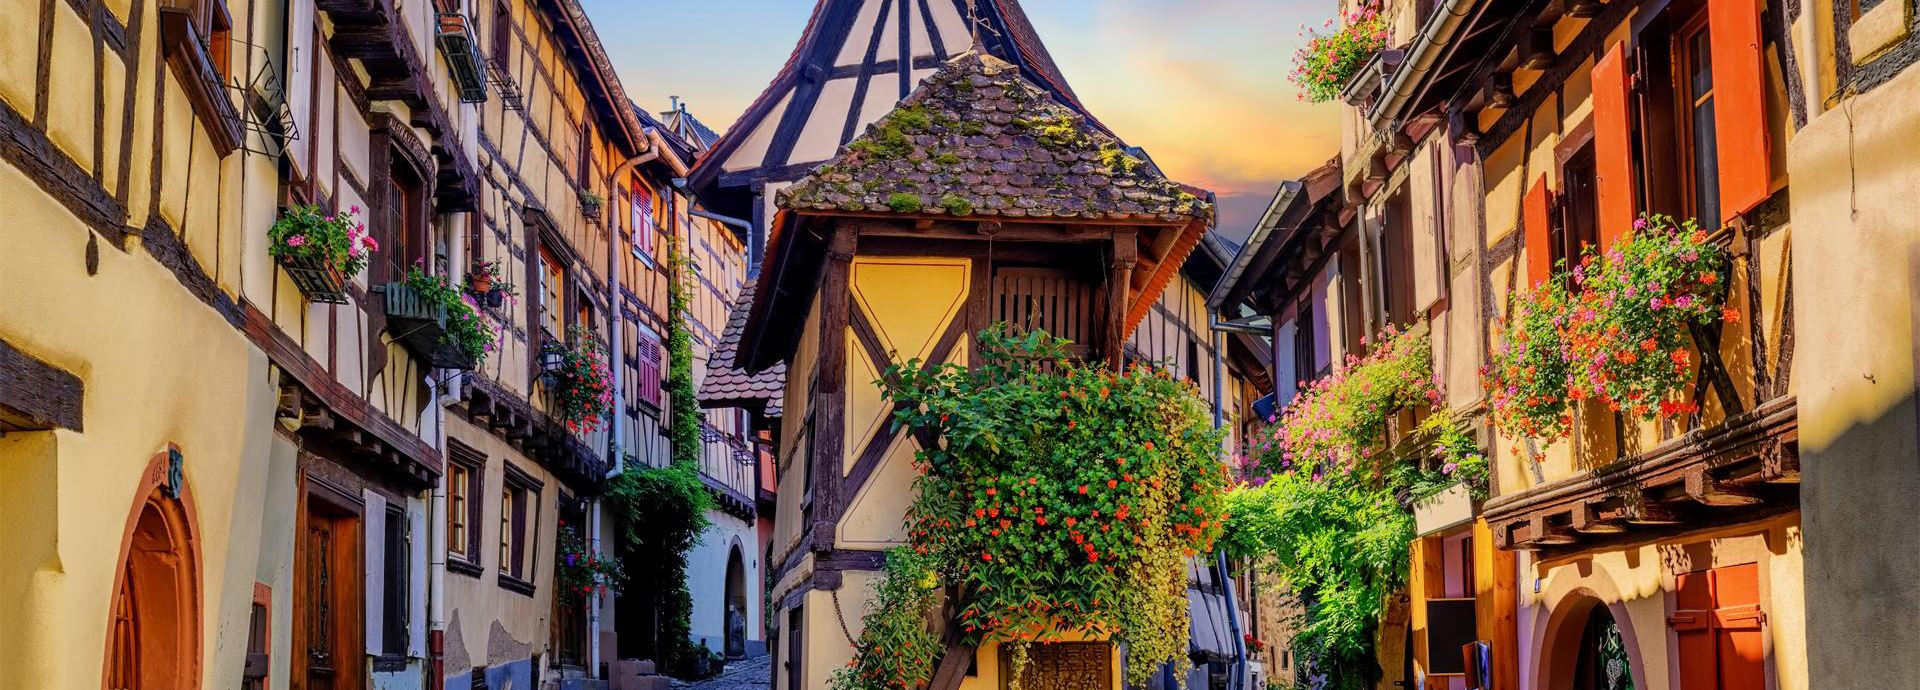 Eguisheim, village viticole d’Alsace